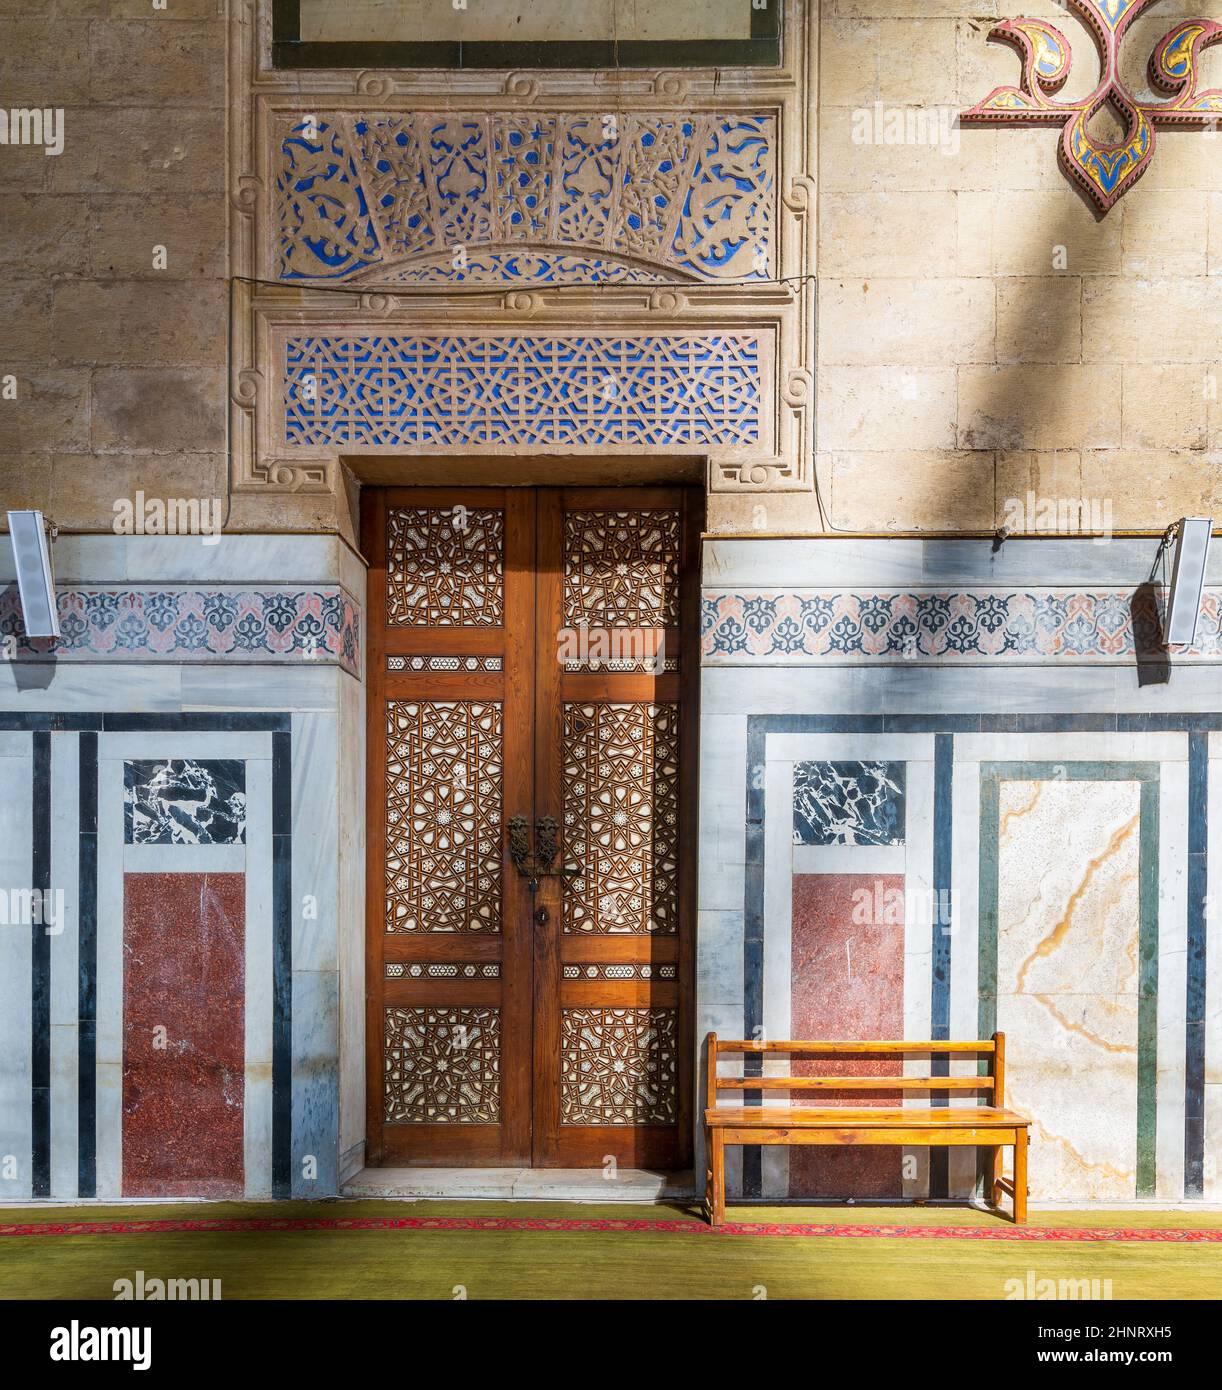 Porte en bois ornementale, murs décorés de mosaïques, banc en bois et sol éclairé par des poutres apparentes, mosquée Al Rifai, le Caire, Égypte Banque D'Images